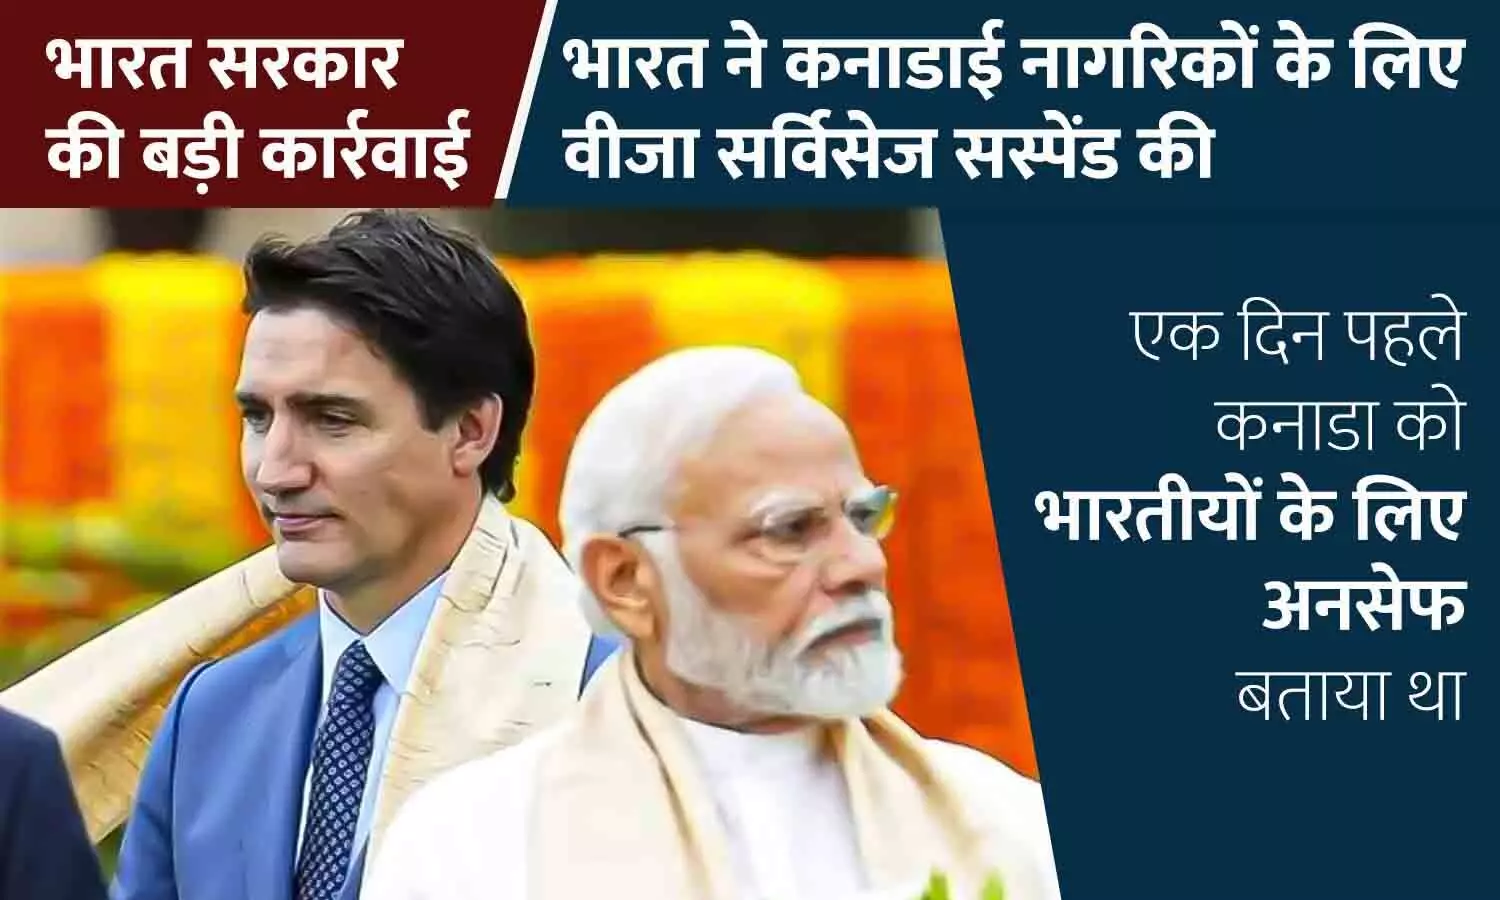 भारत सरकार की बड़ी कार्रवाई: भारत ने कनाडाई नागरिकों के लिए वीजा सर्विसेज सस्पेंड की, कनाडा को भारतीयों के लिए अनसेफ बताया था